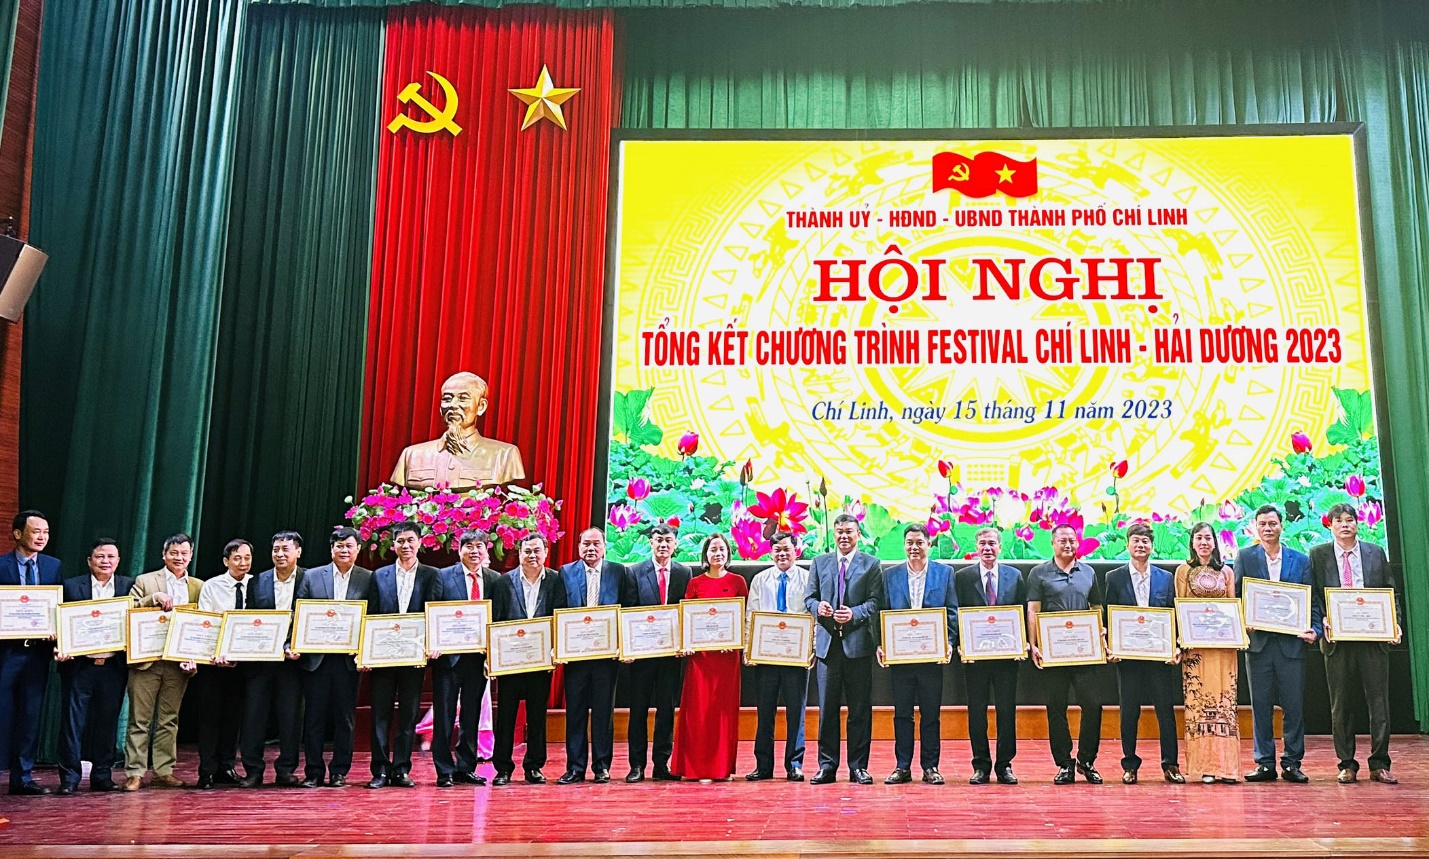 Các tập thể và cá nhân của Trường Đại học Sao Đỏ vinh dự được UBND thành phố Chí Linh khen thưởng tại Hội nghị tổng kết chương trình Festival Chí Linh – Hải Dương